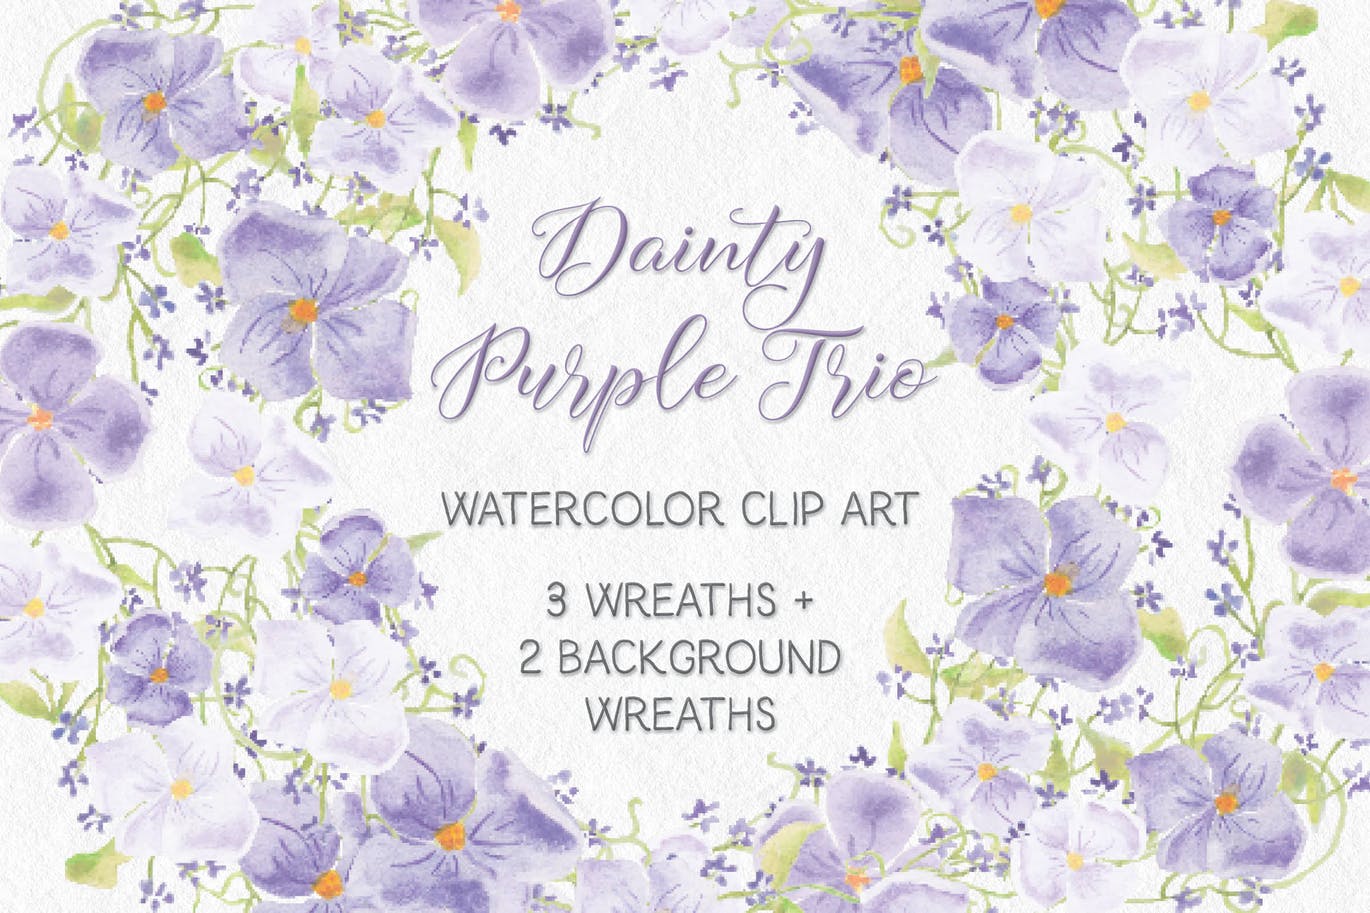 紫色水彩手绘花环图案PNG素材 Trio of Watercolor Floral Wreaths in Purple Shades插图